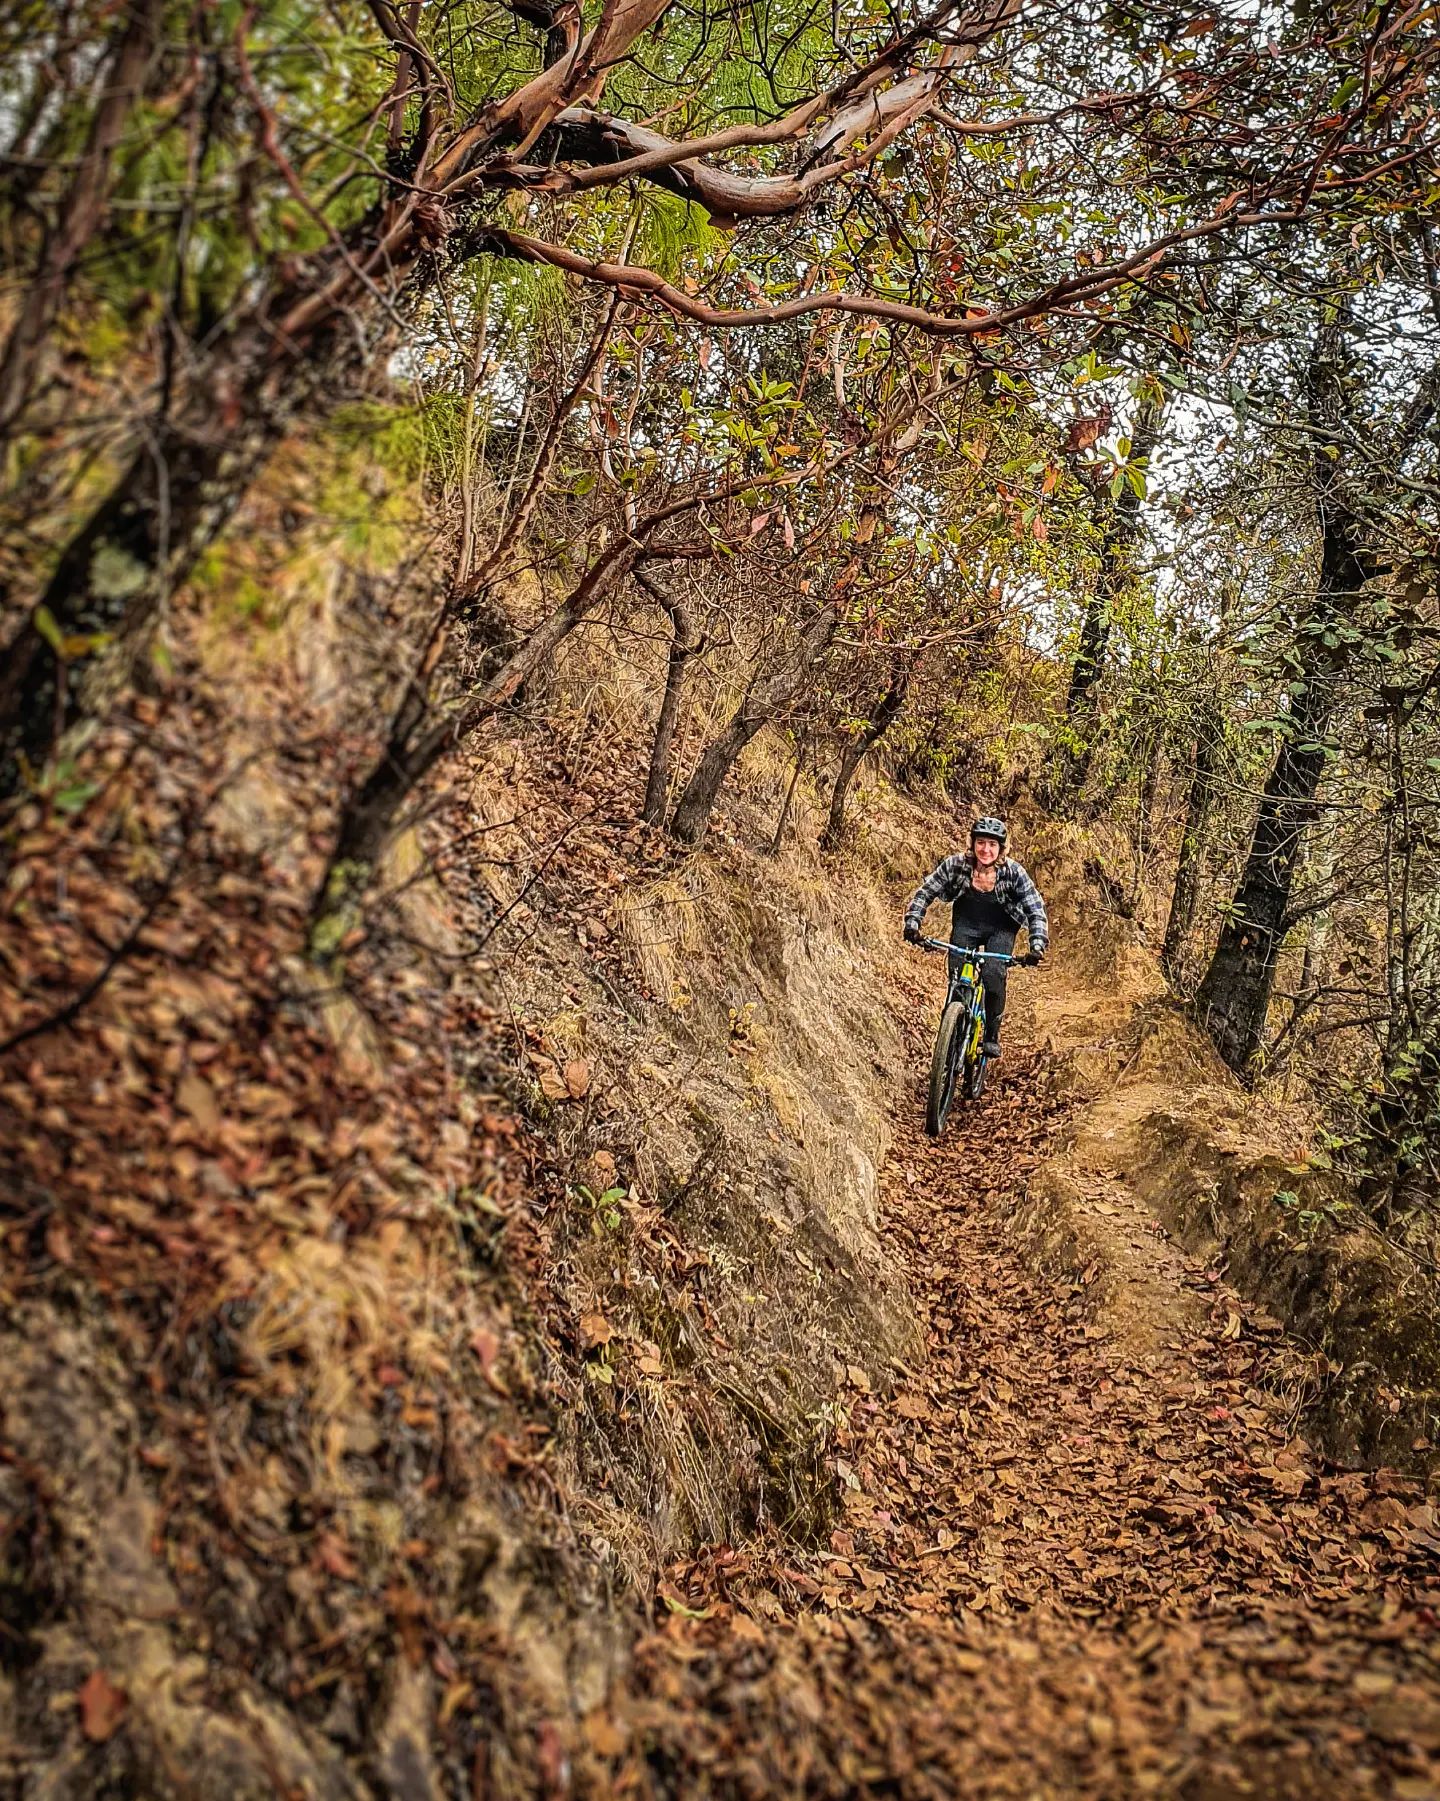 Explorando nuevas rutas, conociendo nuevos lugares! Desde lo alto del Cerro Tecpán hasta la profundidad en los cañones, la diversidad de Guatemlaa es increíble 🇬🇹Próximamente estaremos anunciando las nuevas fechas!#Guatemala #mtbtours #mtbguatemala #enduro #exploraguate #mtbtravel #mountainbikeguatemala #tecpan #biketravel #bikelife #adventuremtb #biketour #mtbguide #freedomontwowheels #naturaleza #visitguatemala